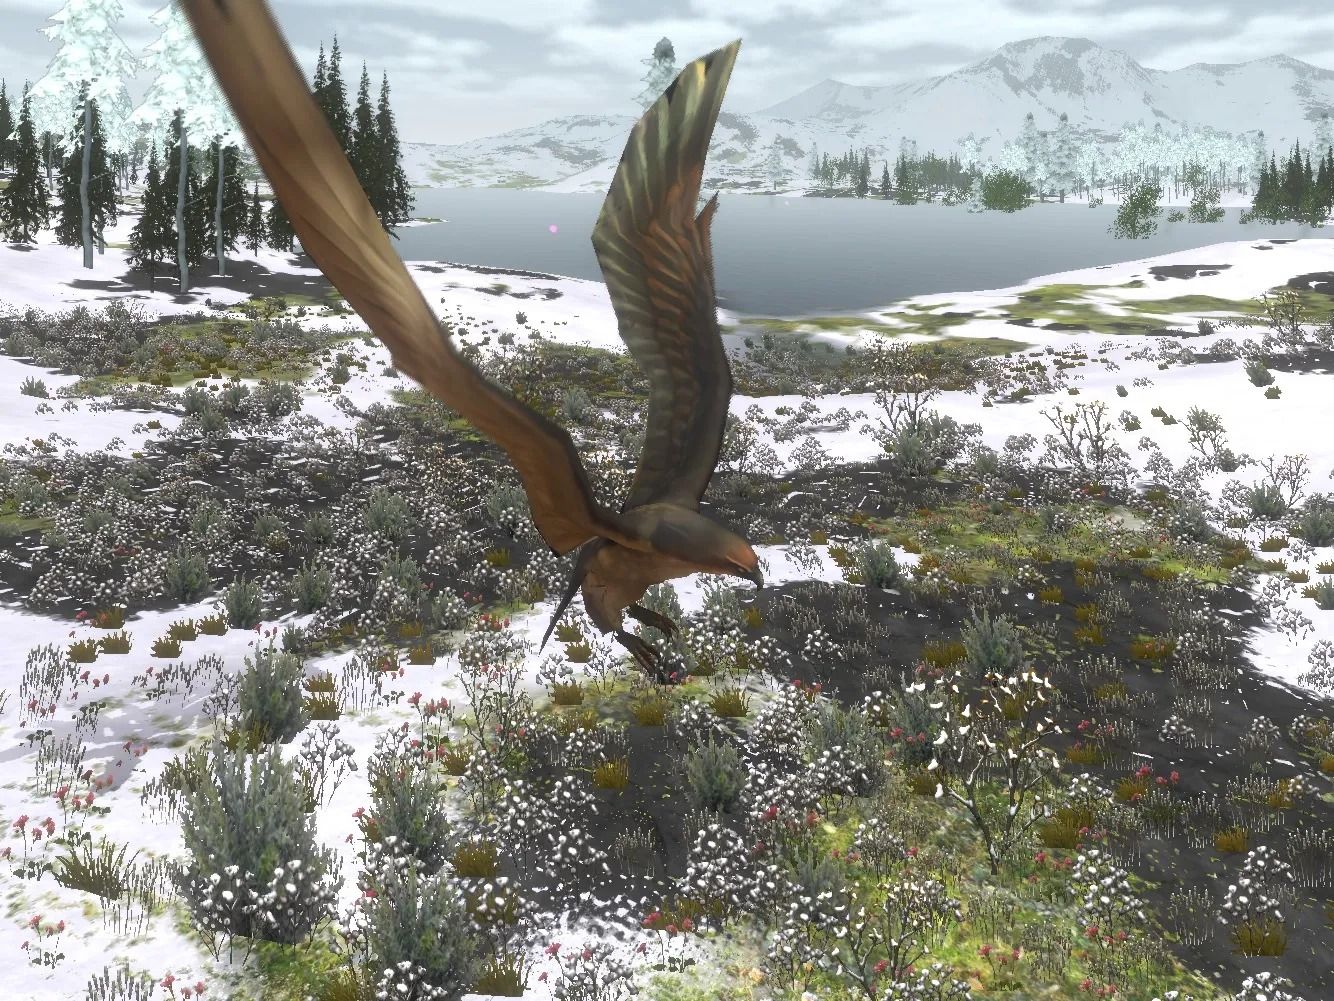 captura de tela sem natureza selvagem mostrando uma águia voando acima de uma planície parcialmente nevada